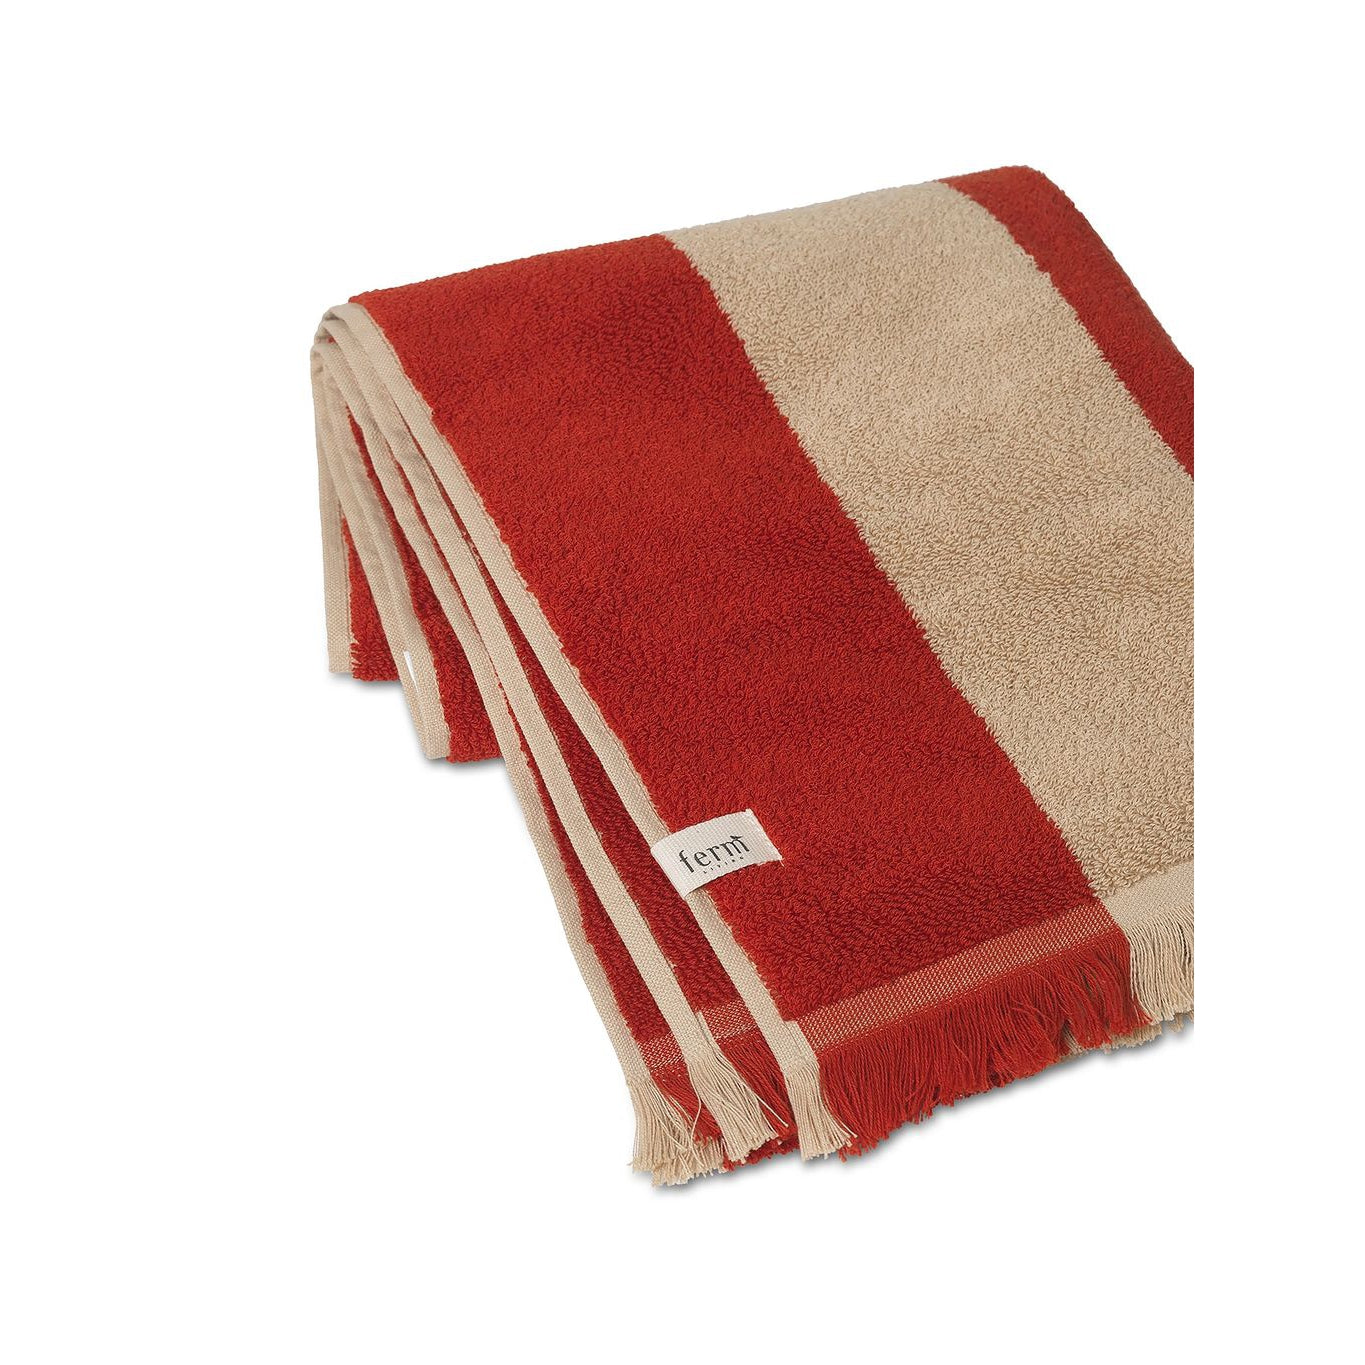 Asciugamano Ferm Living Alee 50x100 cm, cammello chiaro/rosso